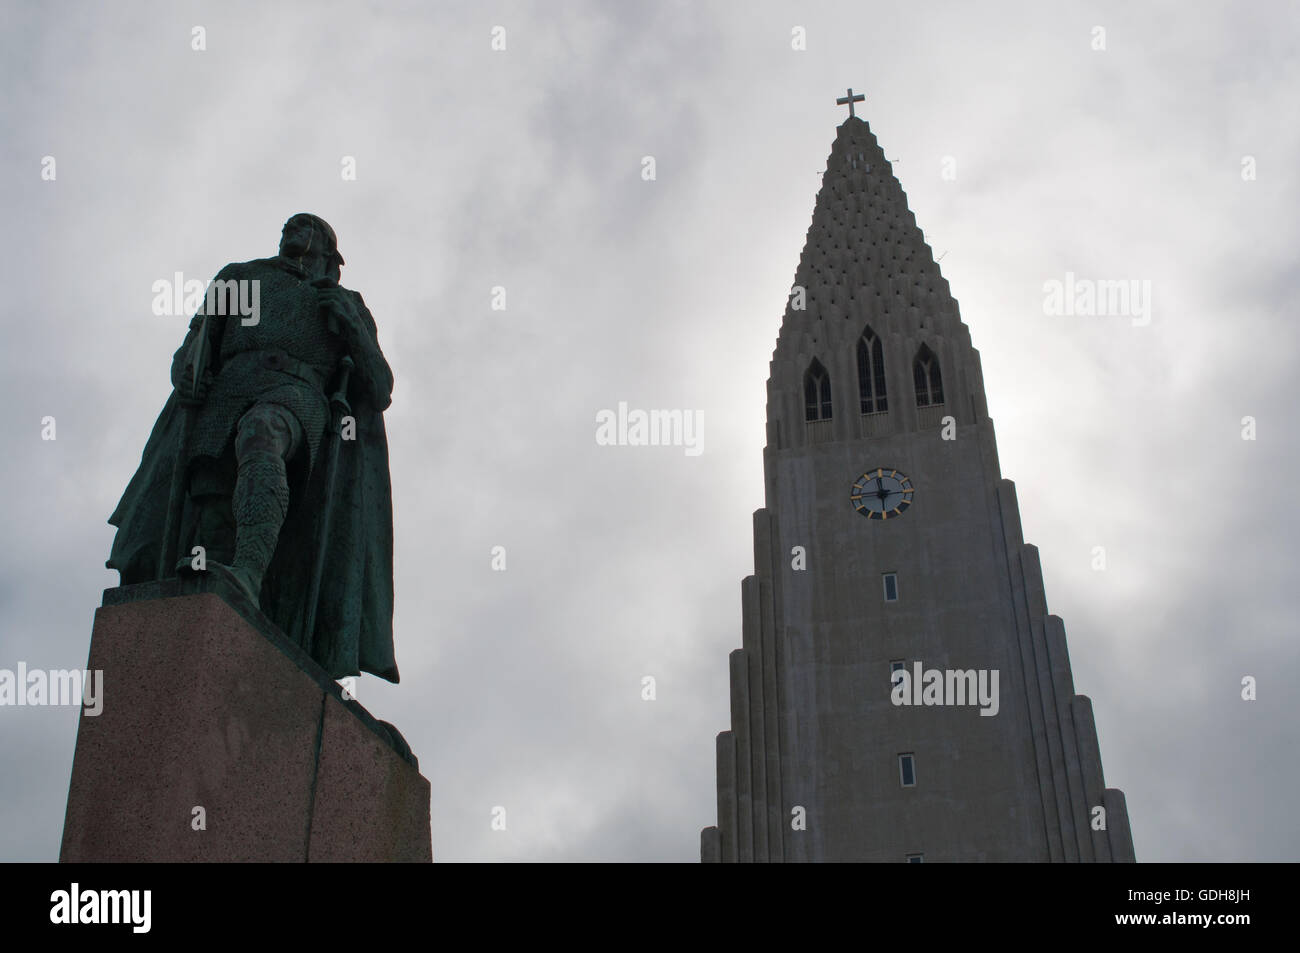 Reykjavik, Nord Europa: il Hallgrimskirkja, Luteran chiesa Hallgrimur, e la statua di explorer Leif Ericsson, due simboli della città Foto Stock